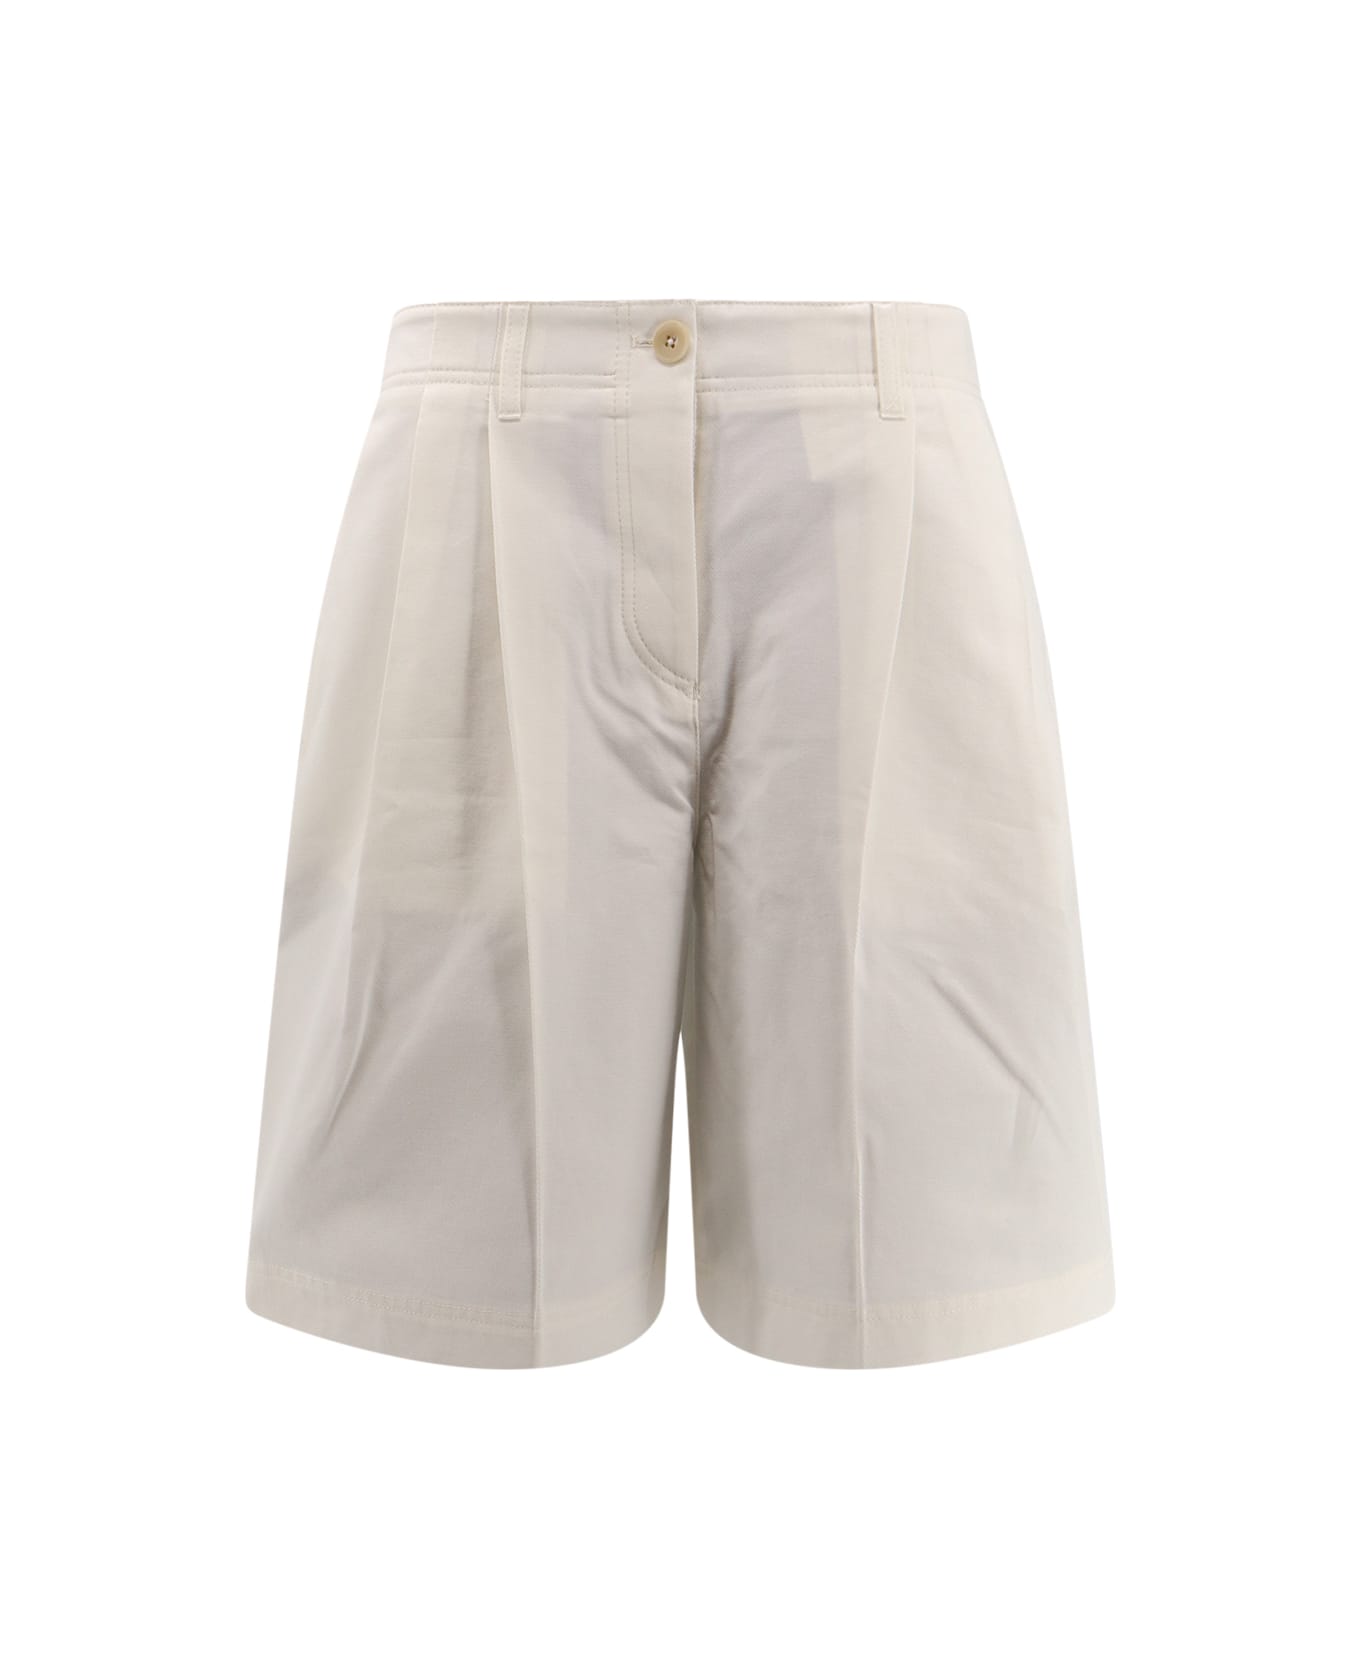 Totême Bermuda Shorts - White ショートパンツ